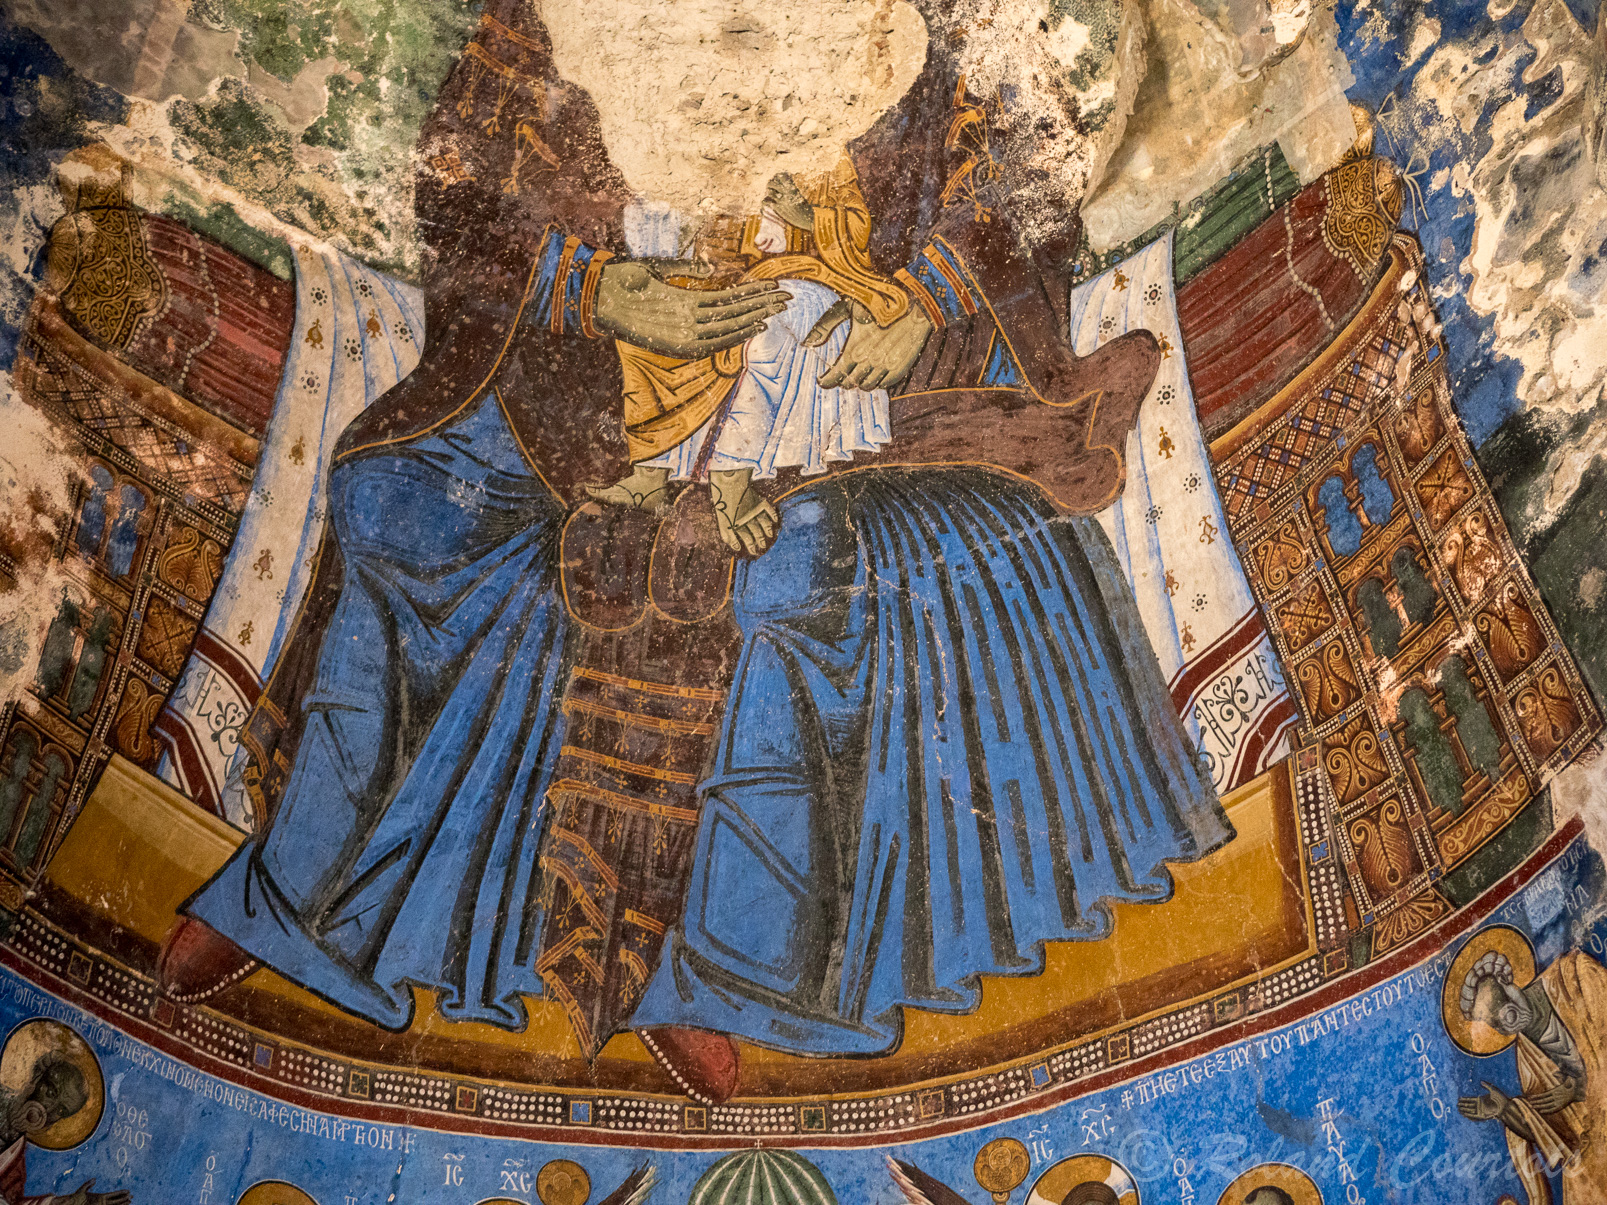 Monastère d'Akhtala. Cette église est renommée pour ses fresques elle se caractérise par son iconographie riche en thèmes et aux couleurs variées. Une grande représentation de la Vierge à l'enfant surplombe l'autel ; elle a été sévèrement endommagée.